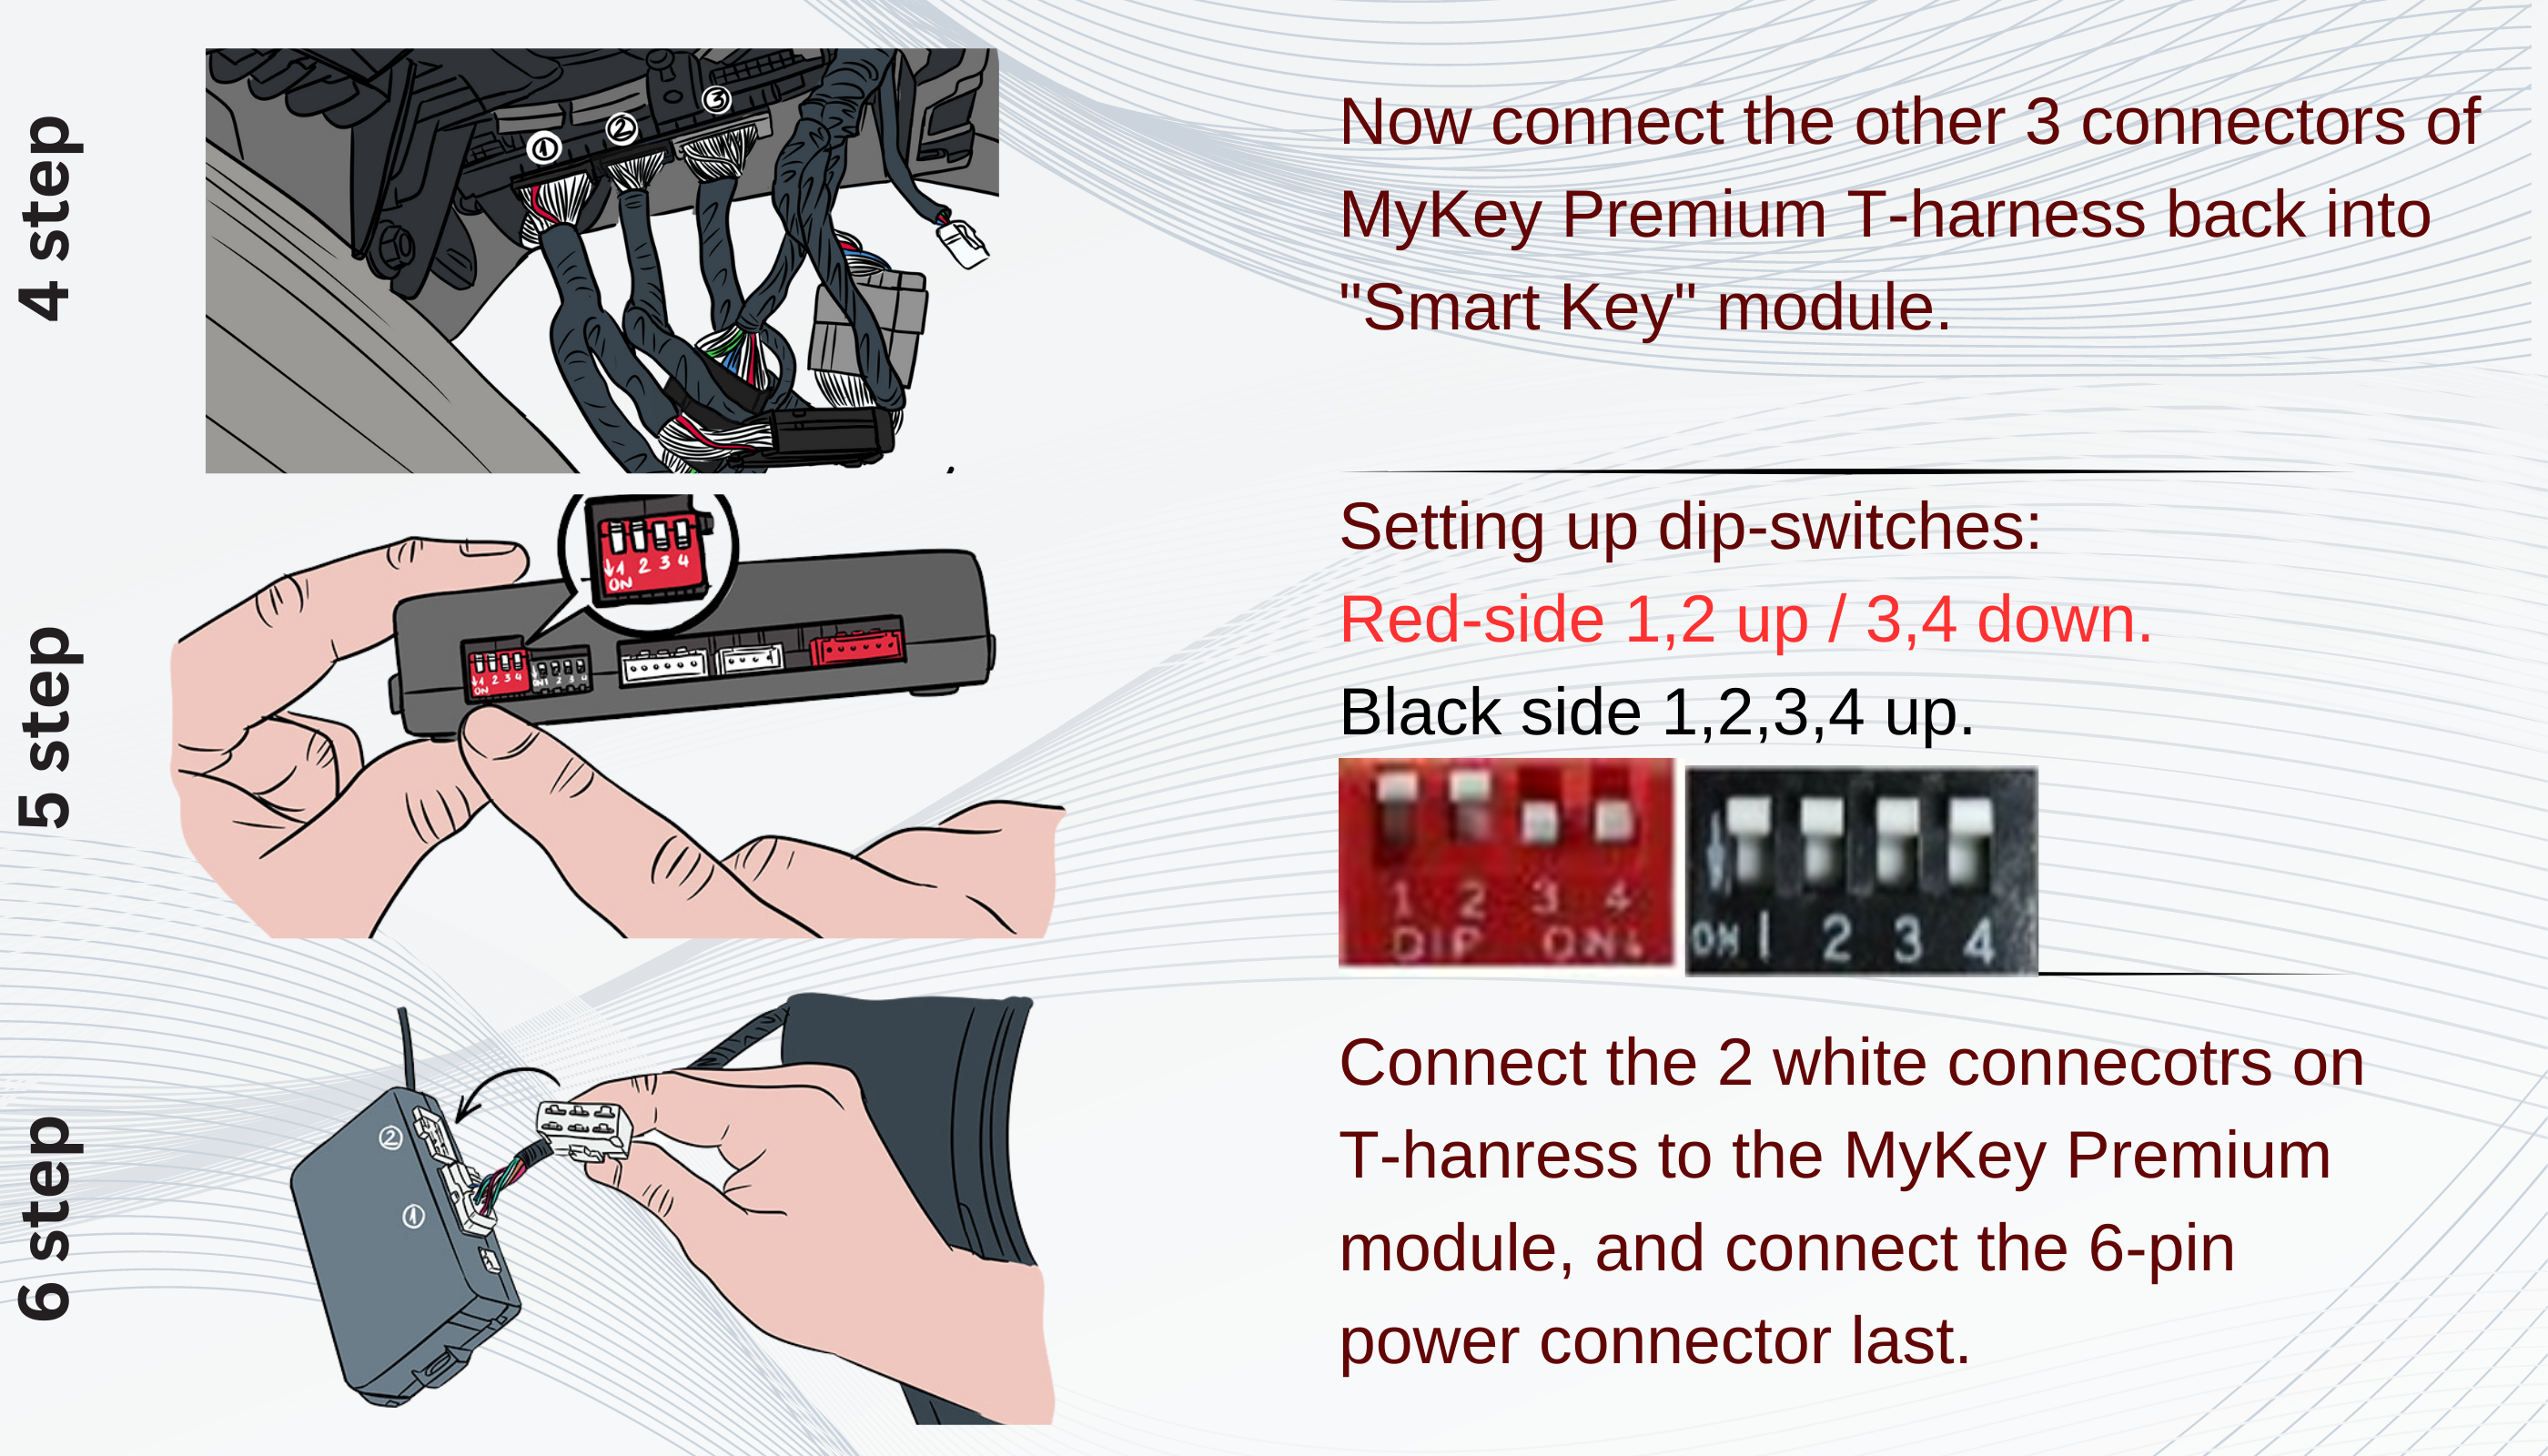 Kia Rio Remote auto starter kit installation guide [MyKey Premium]